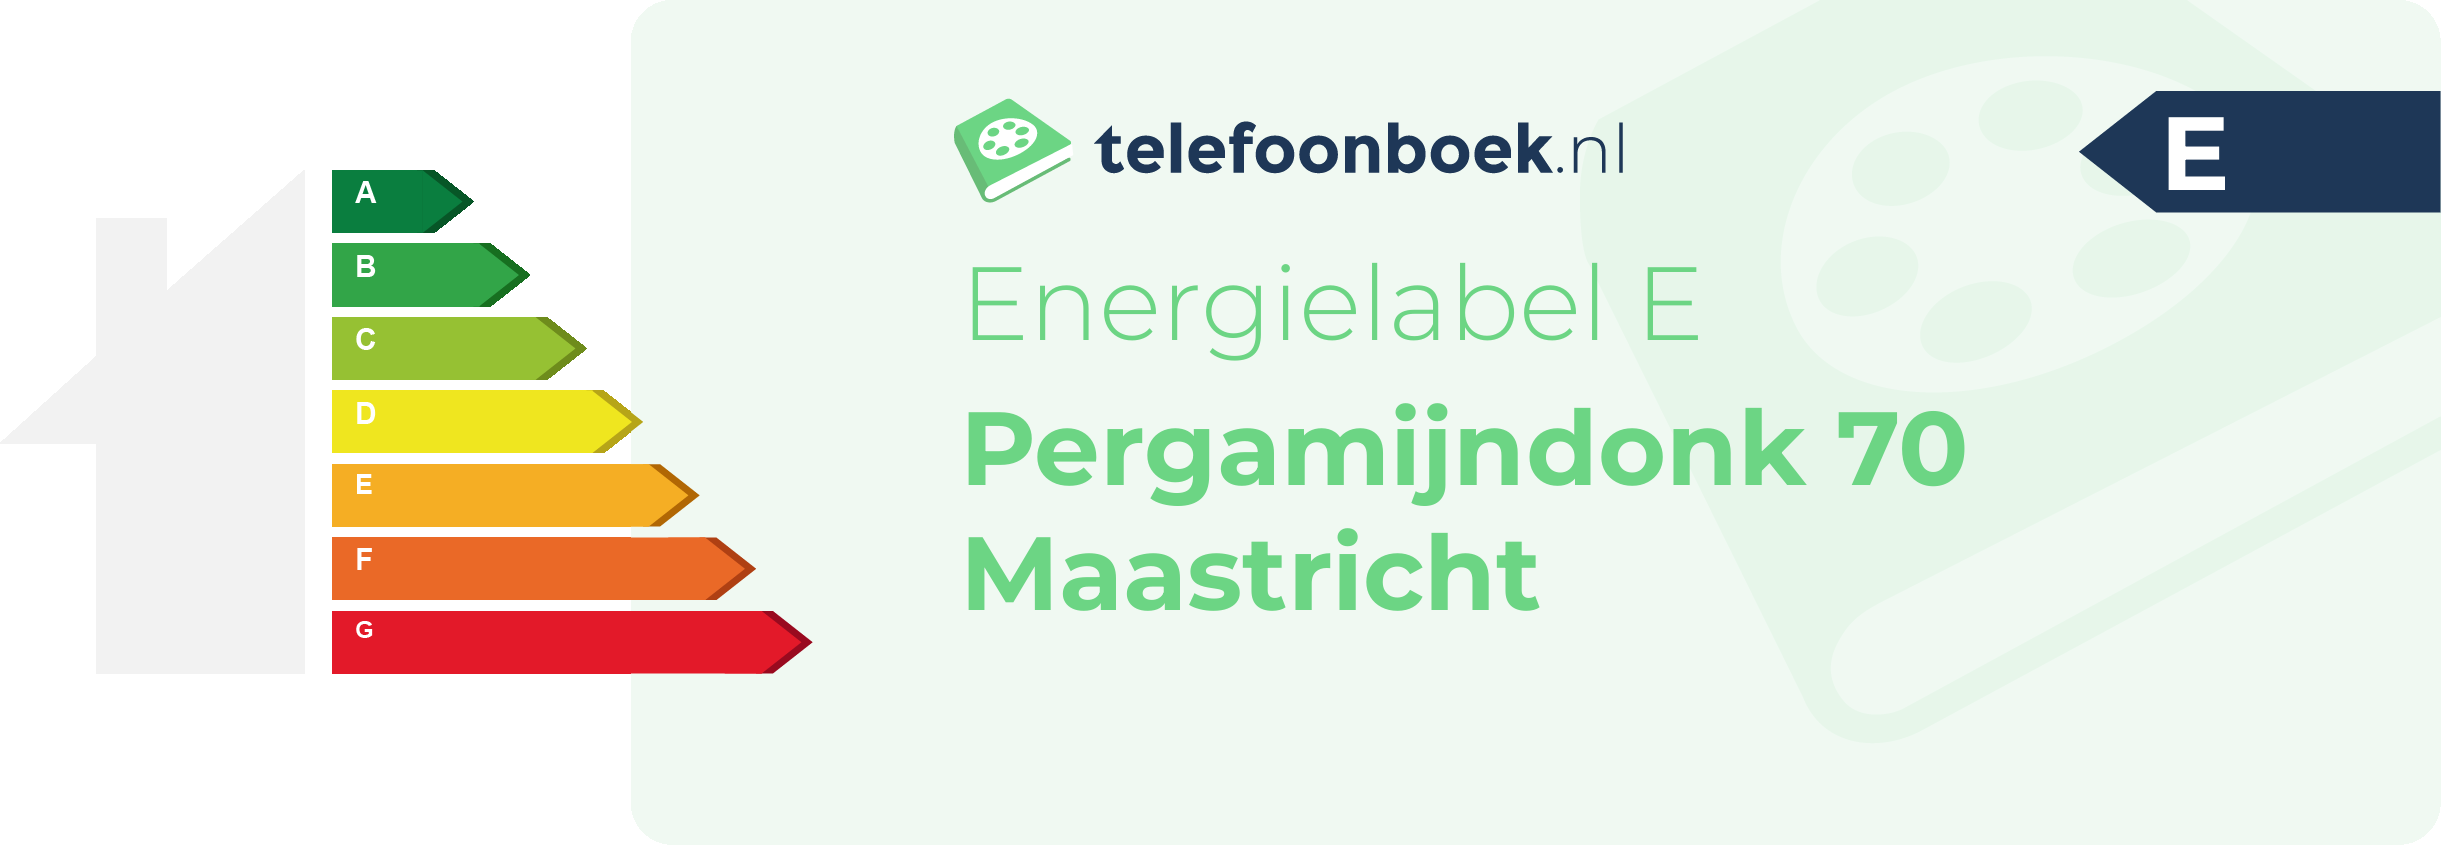 Energielabel Pergamijndonk 70 Maastricht